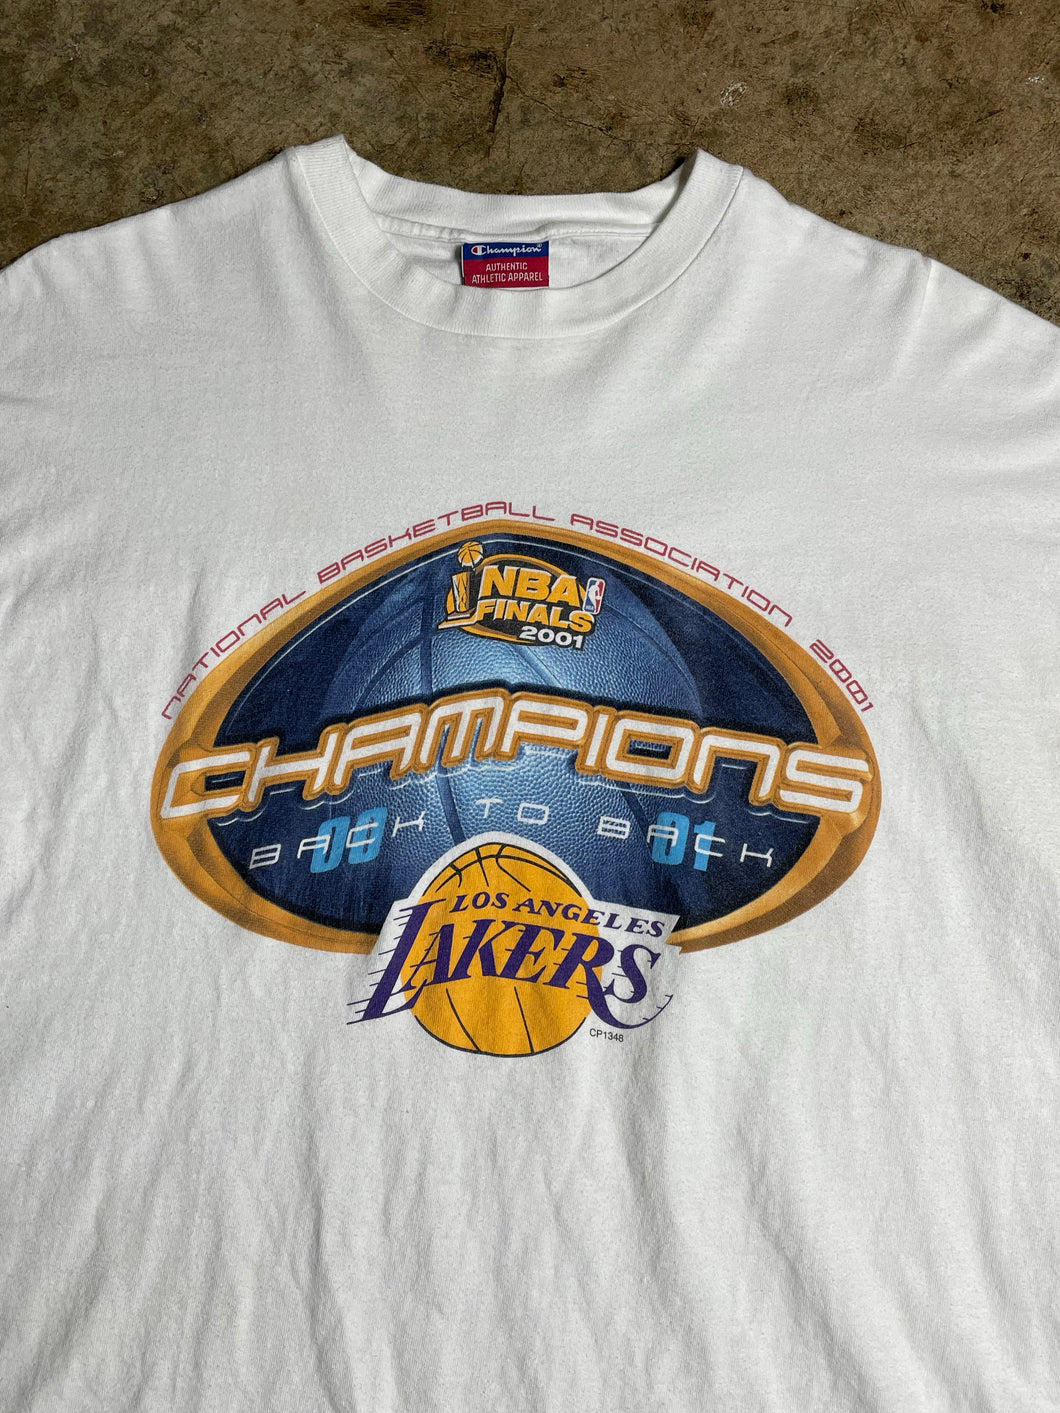 ‘01 LA Lakers NBA Finals Champs - XL